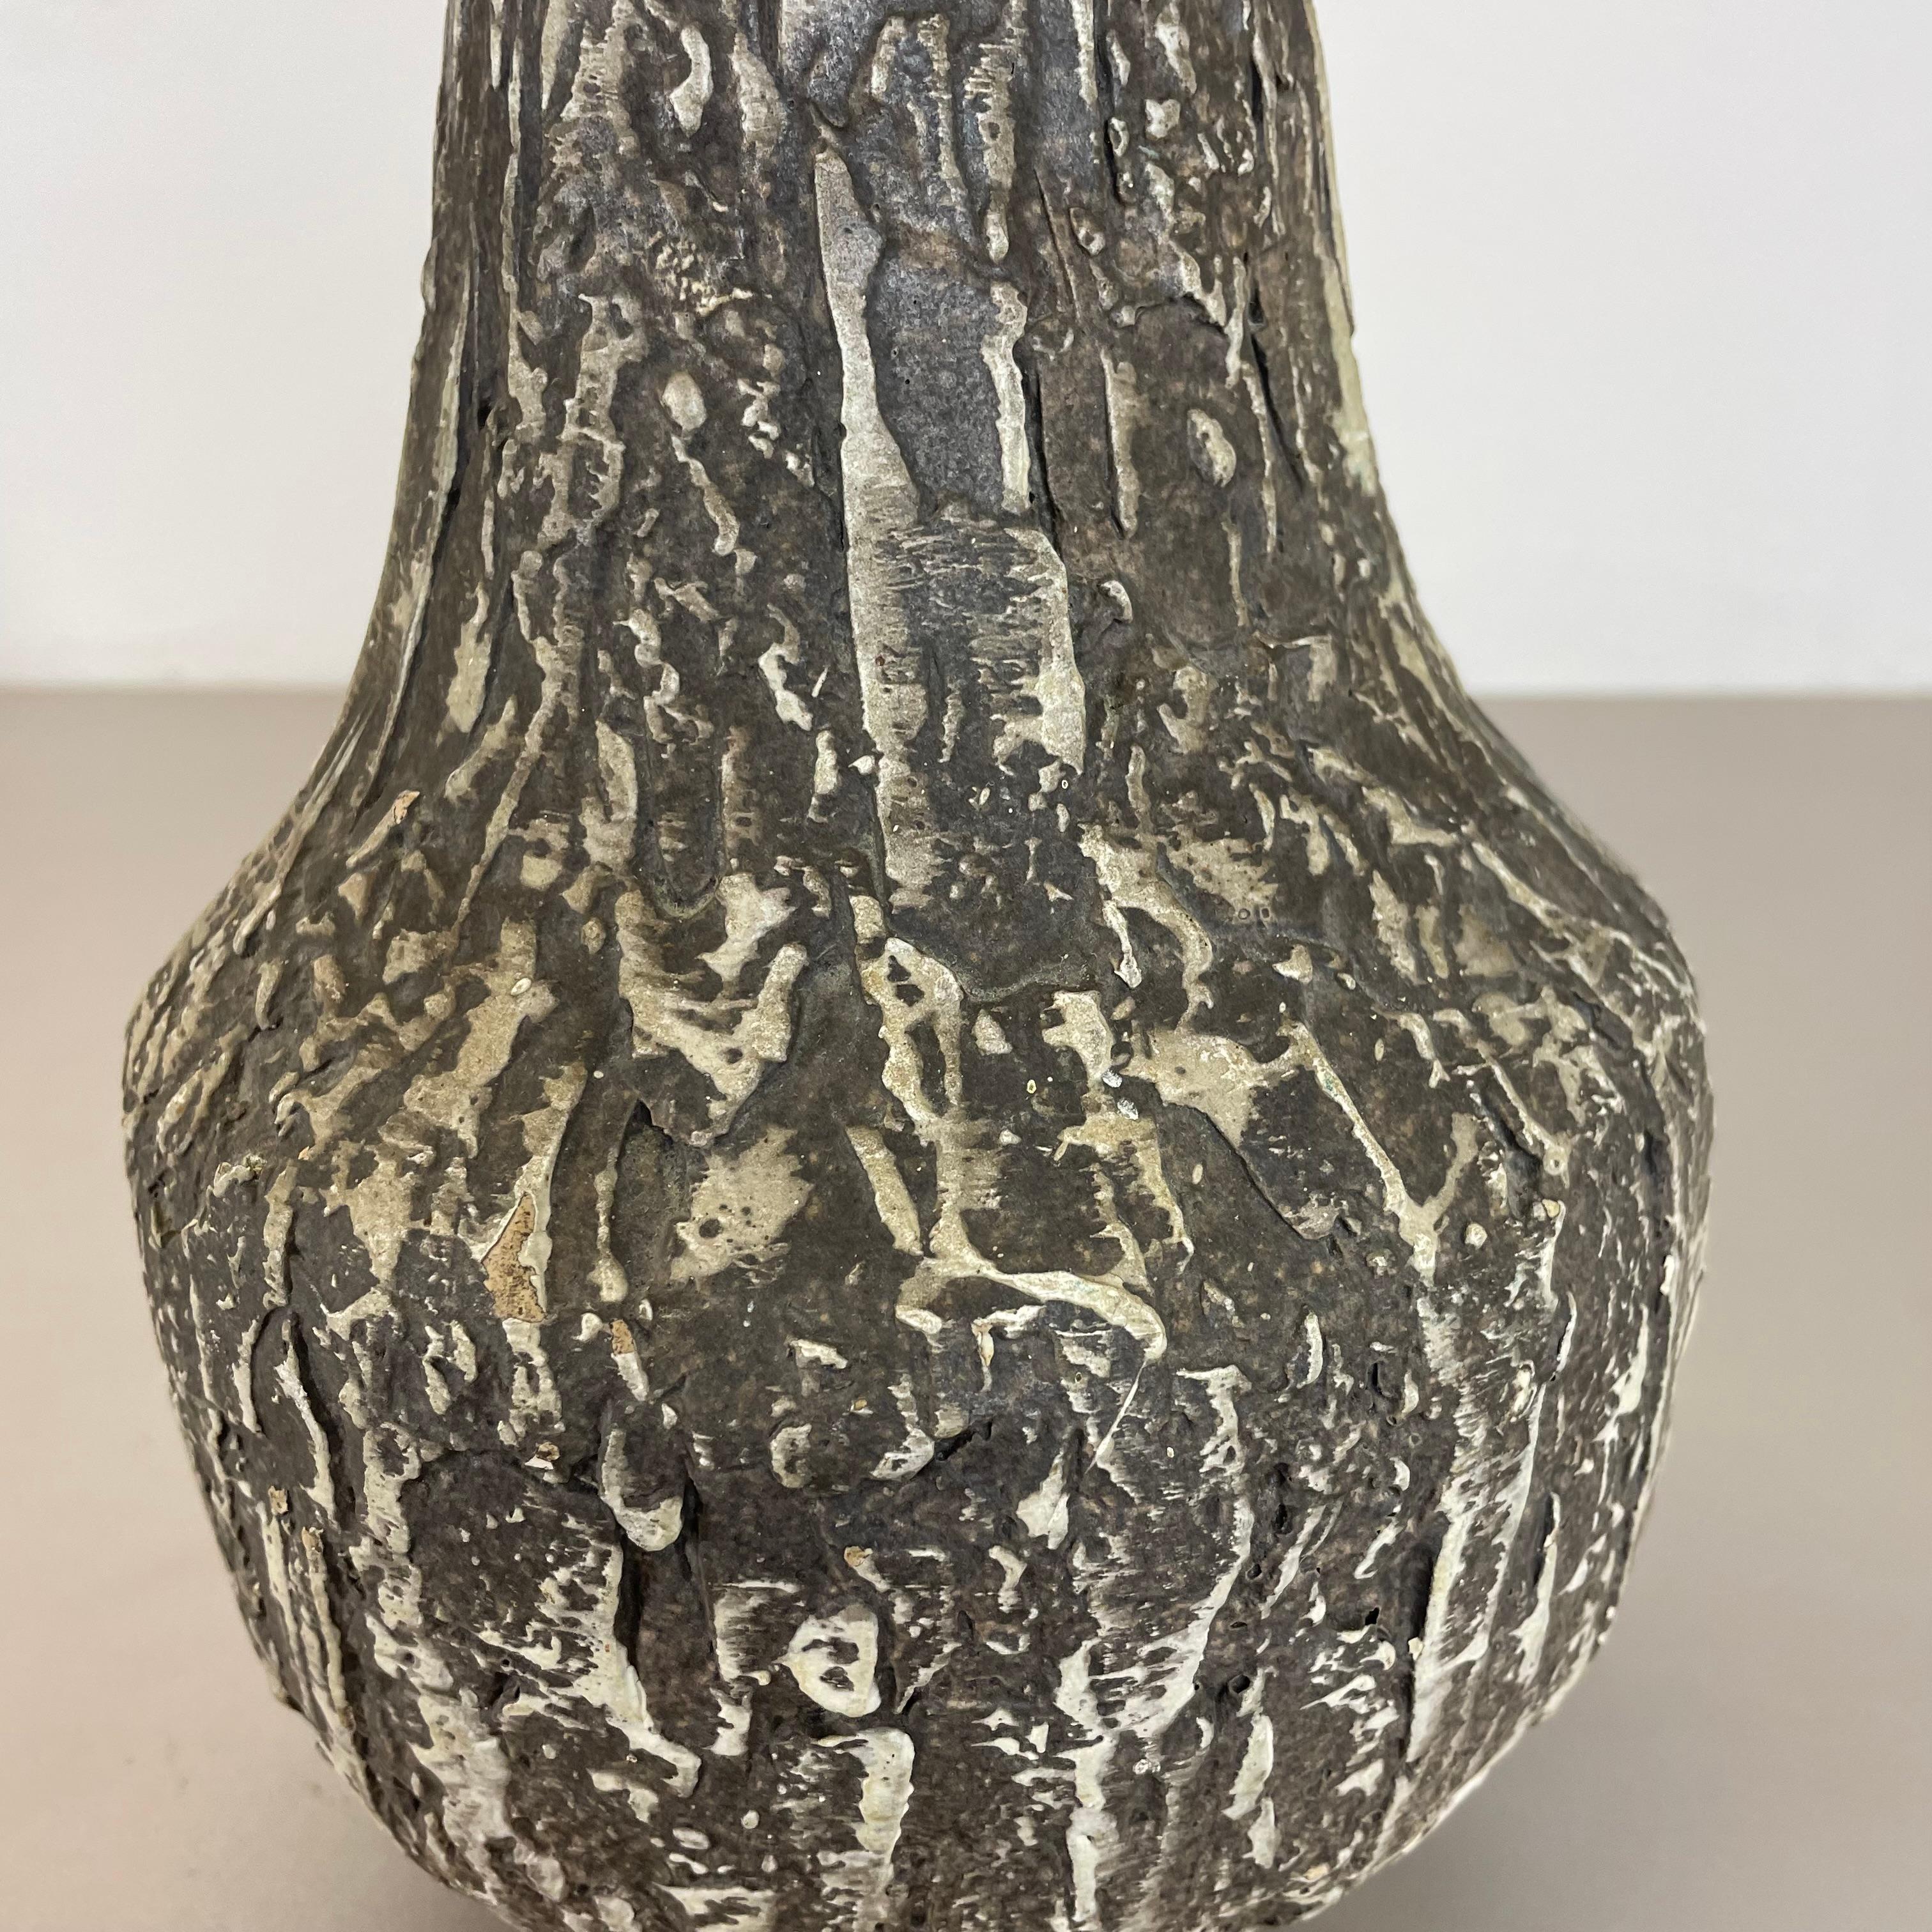 Rare 35cm Grey Brutalist Fat Lava Ceramic Vases by ILKRA Ceramics, Germany 1970s For Sale 5